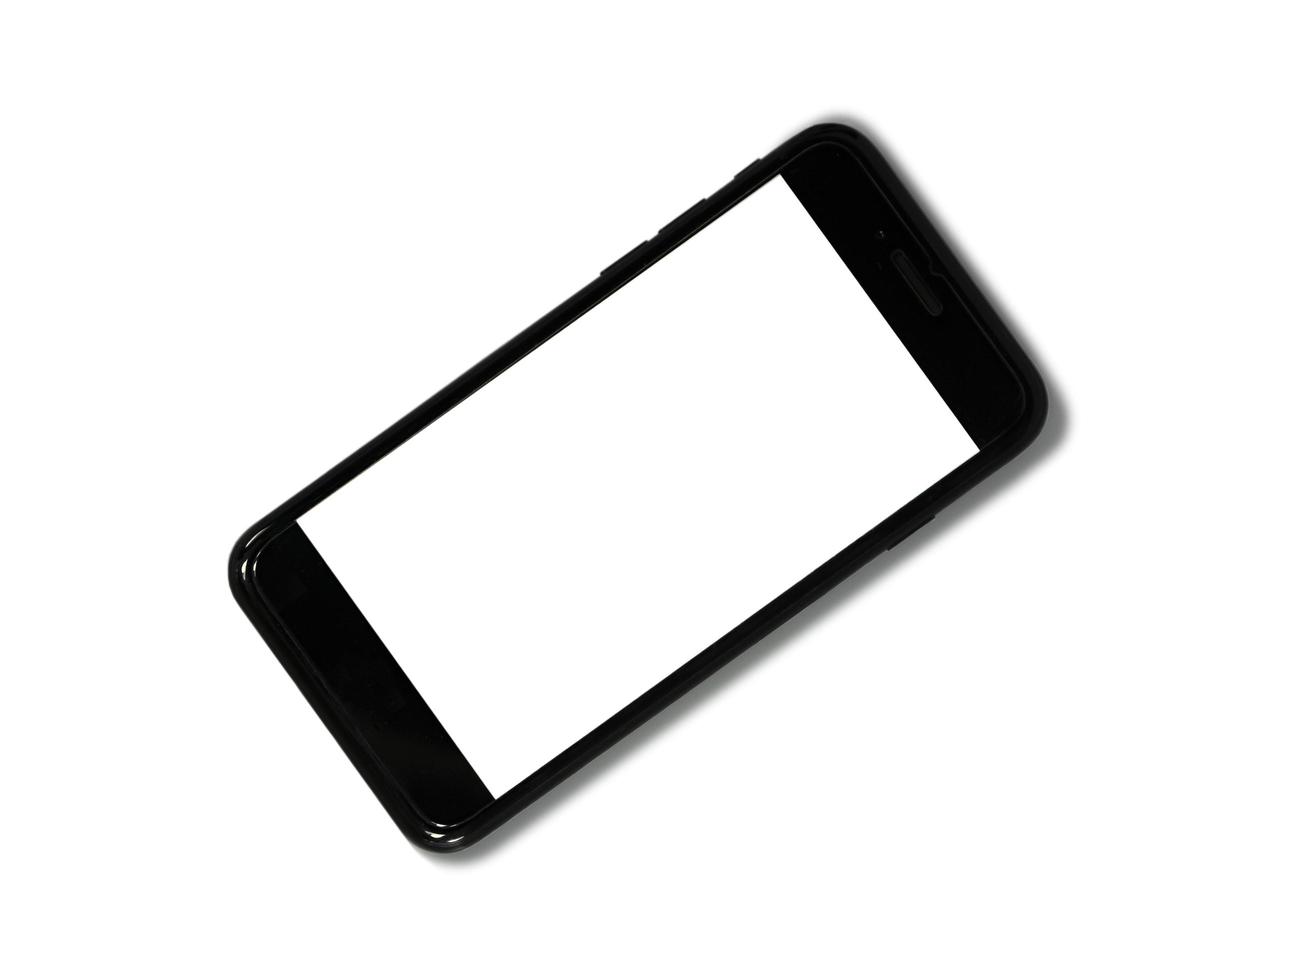 zwarte telefoon geïsoleerd op een witte achtergrond met kopie ruimte op het scherm foto